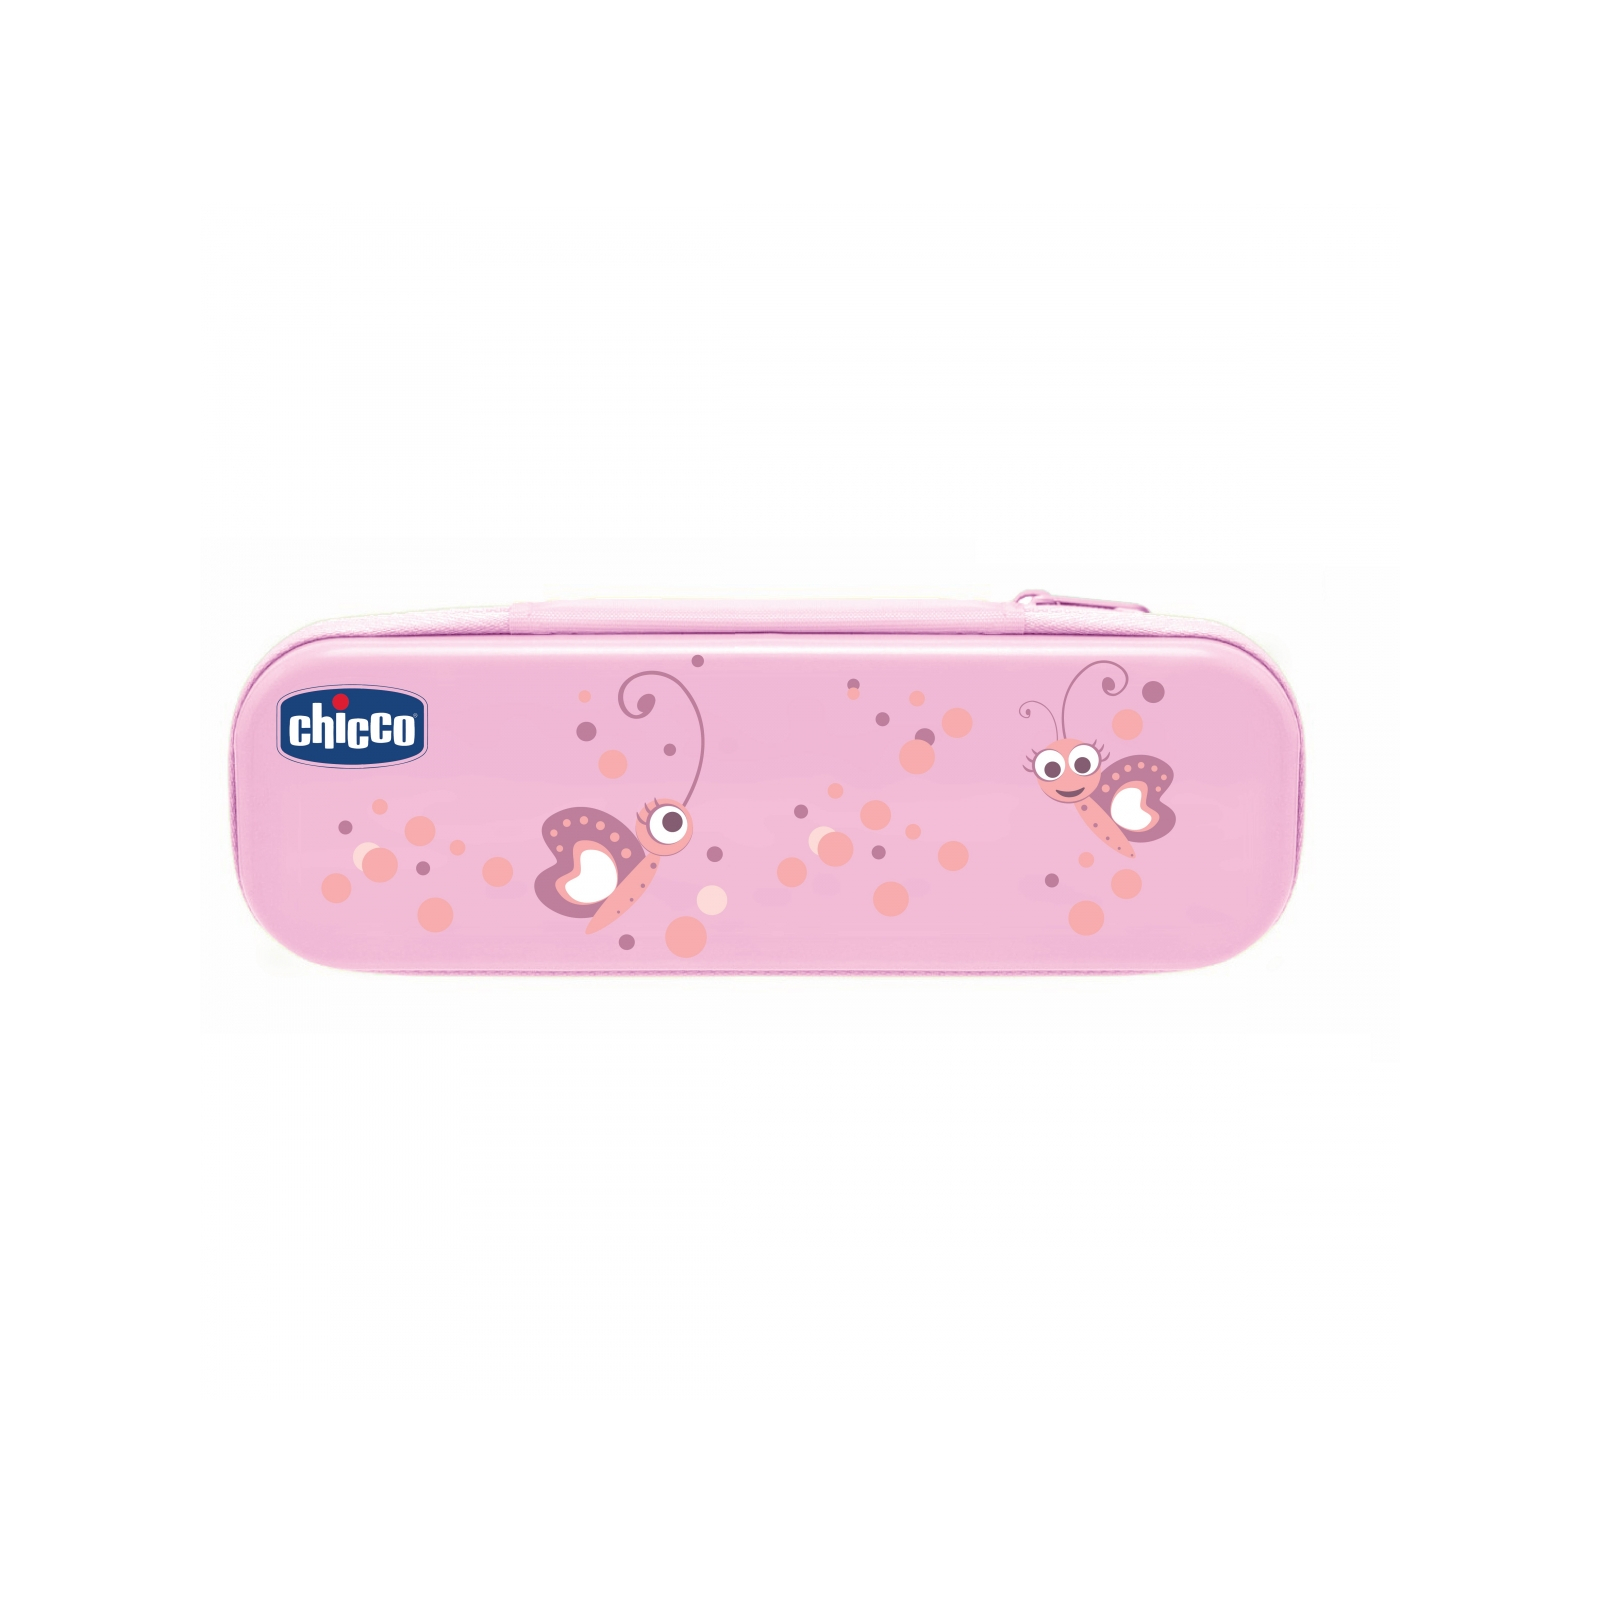 Детская зубная щетка Chicco щетка + паста розовый (06959.10)